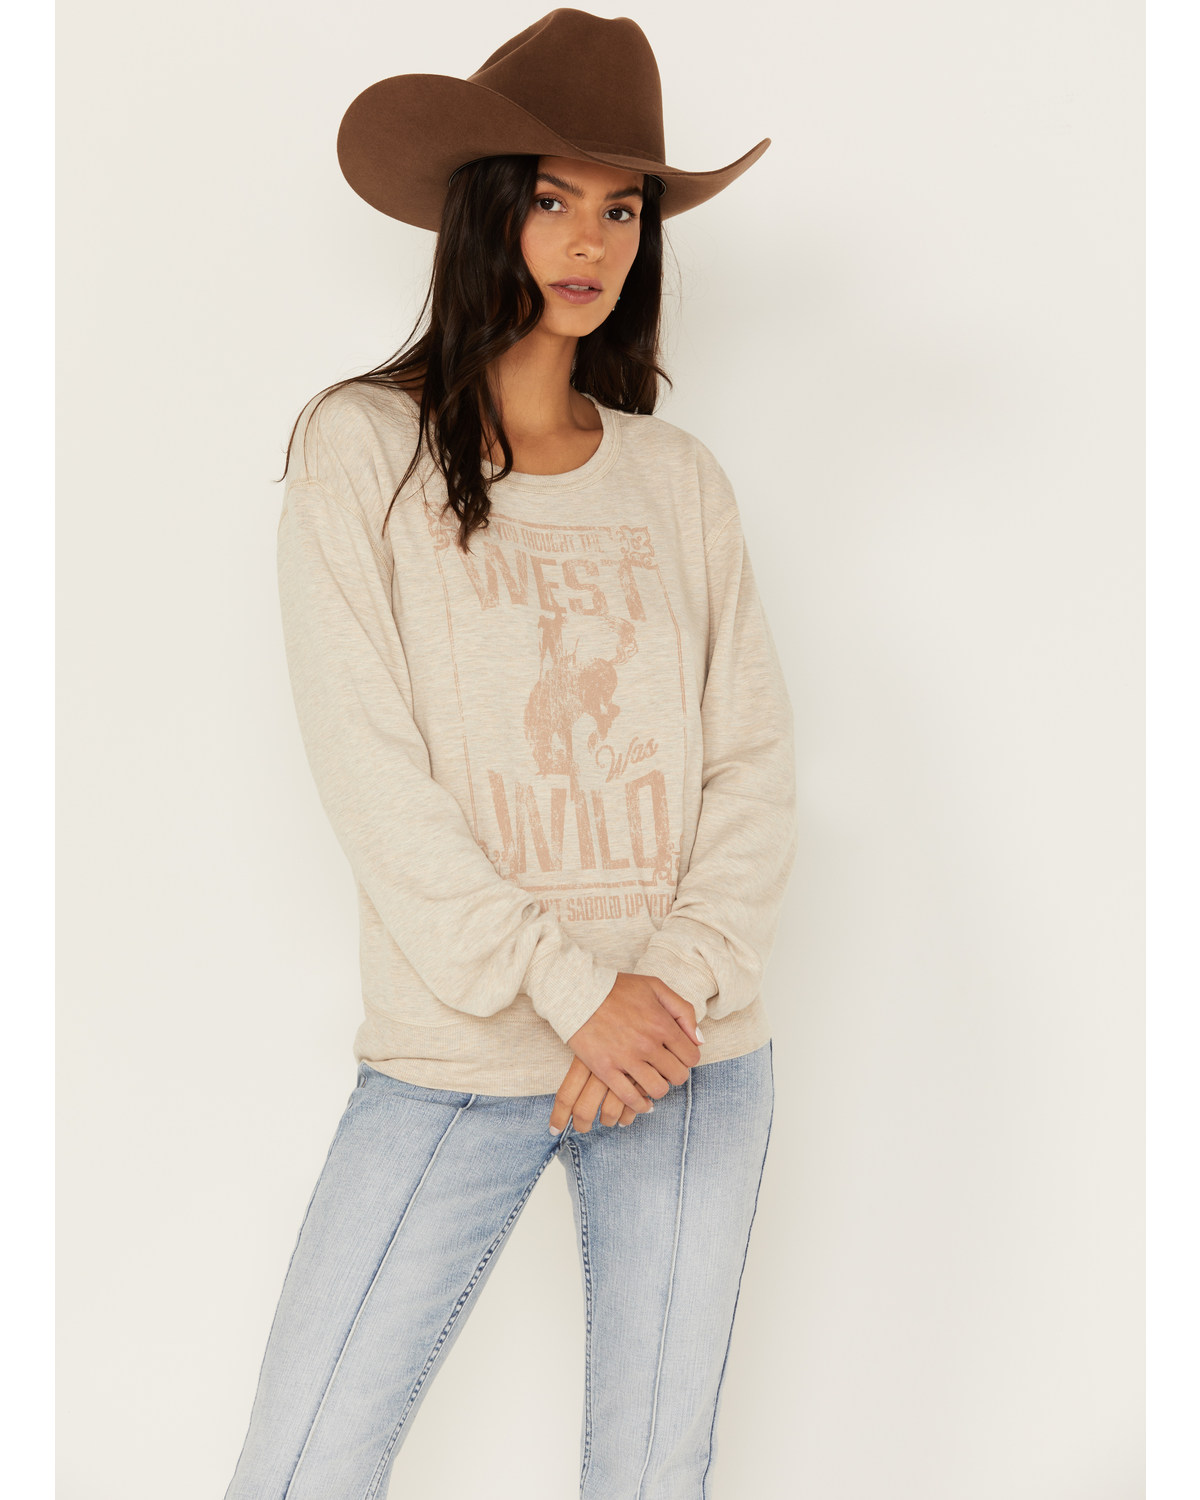 Idyllwind Women's Wild West Graphic Sweatshirt